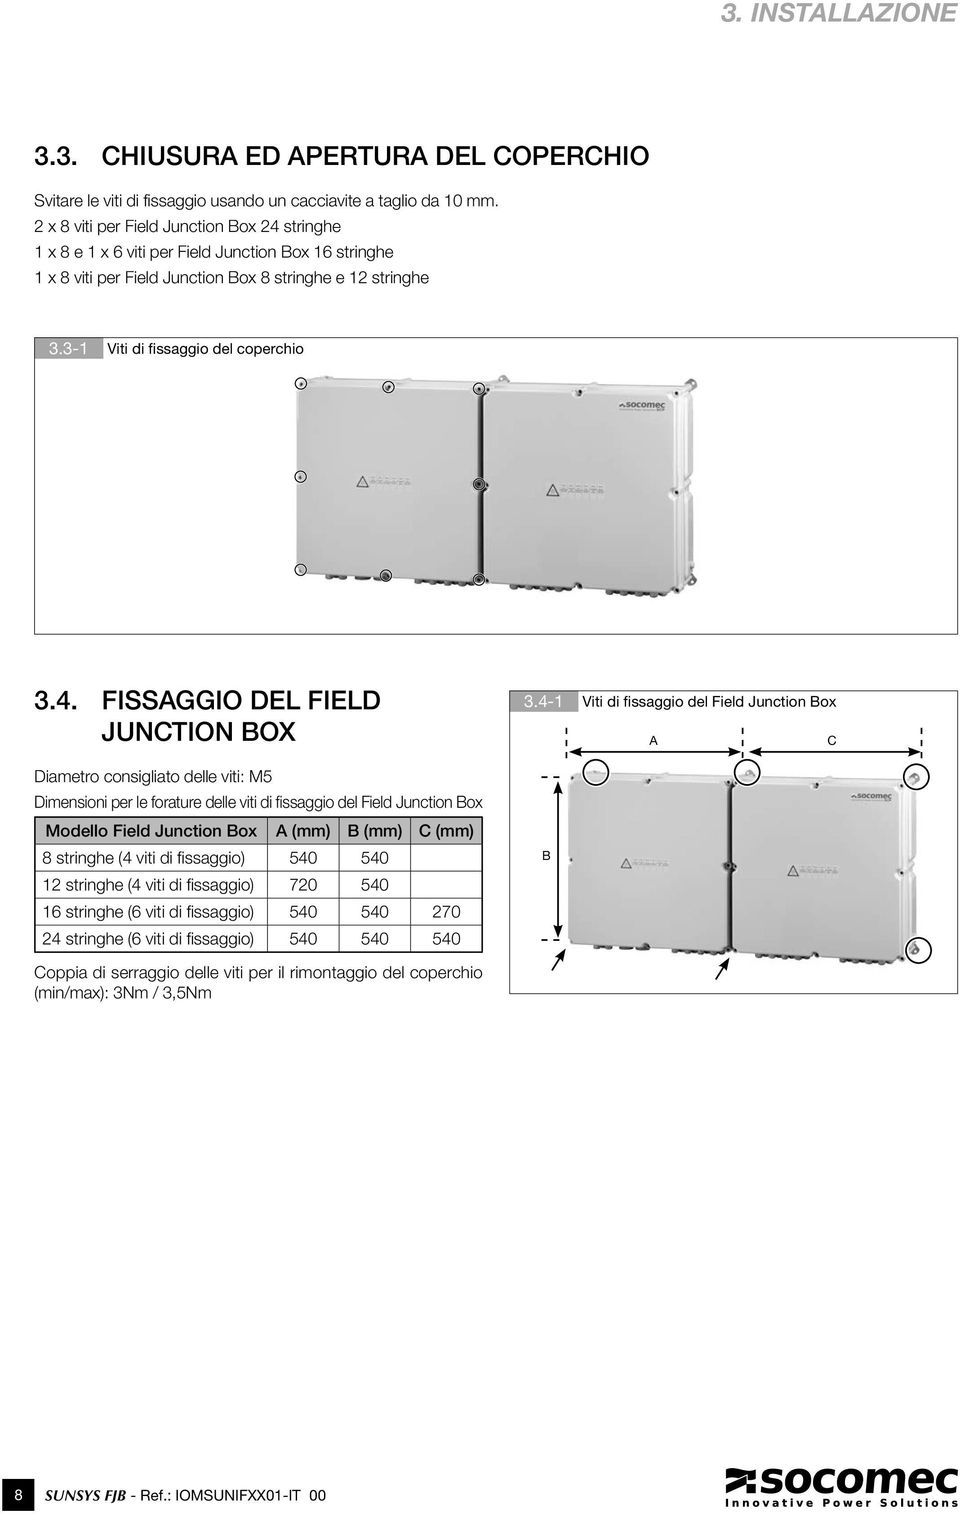 4. FISSAGGIO DEL FIELD JUNCTION BOX Diametro consigliato delle viti: M5 Dimensioni per le forature delle viti di fissaggio del Field Junction Box Modello Field Junction Box A (mm) B (mm) C (mm) 8